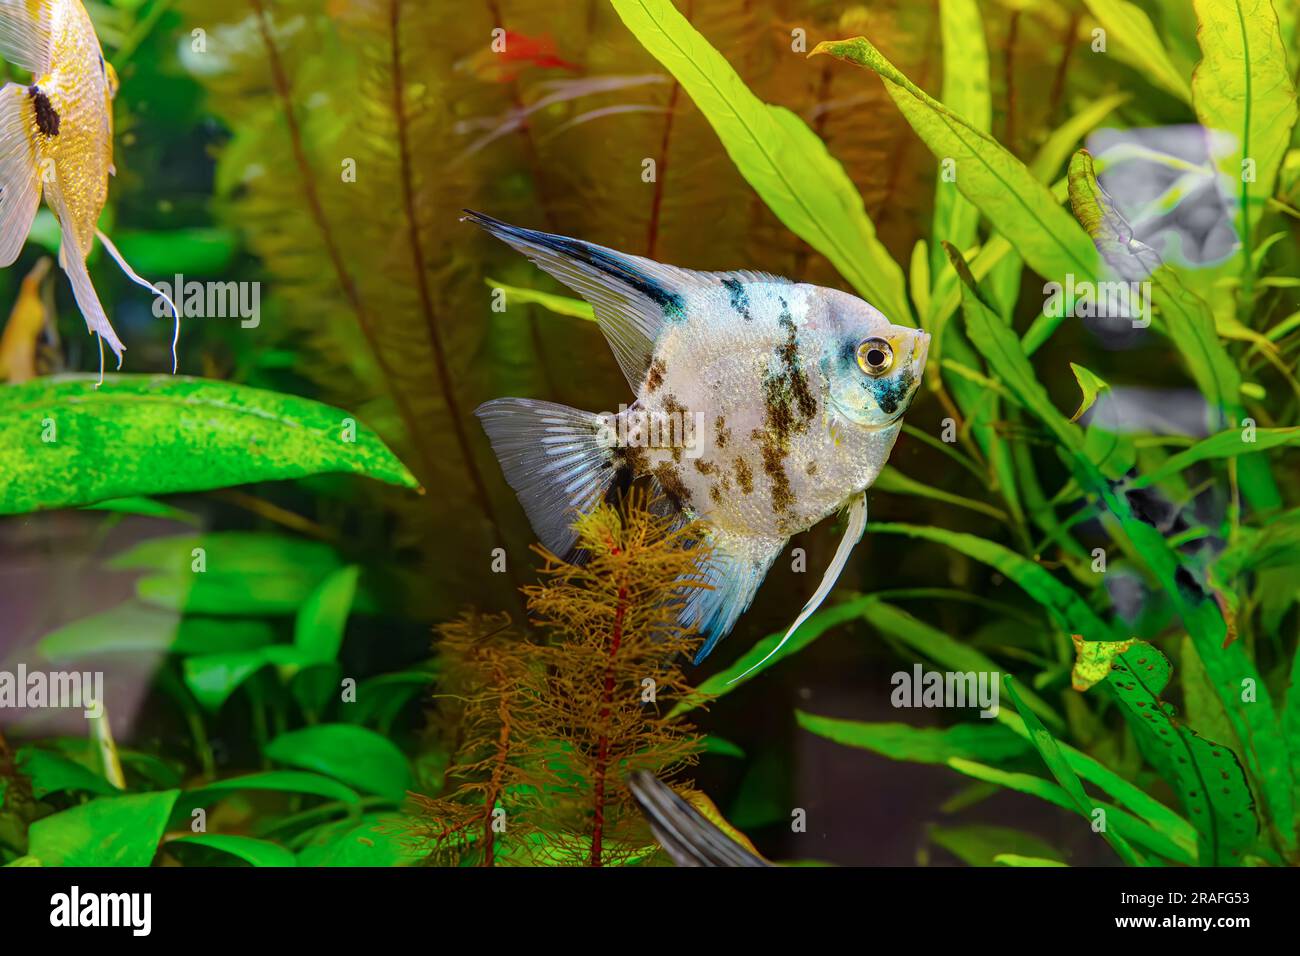 Pesci tropicali Pterophyllum scalare altum, angelfish nuoto in acqua acquario wtih alghe verdi. Pesce bruno nella piscina dell'oceanarium. Organismo acquatico, unde Foto Stock